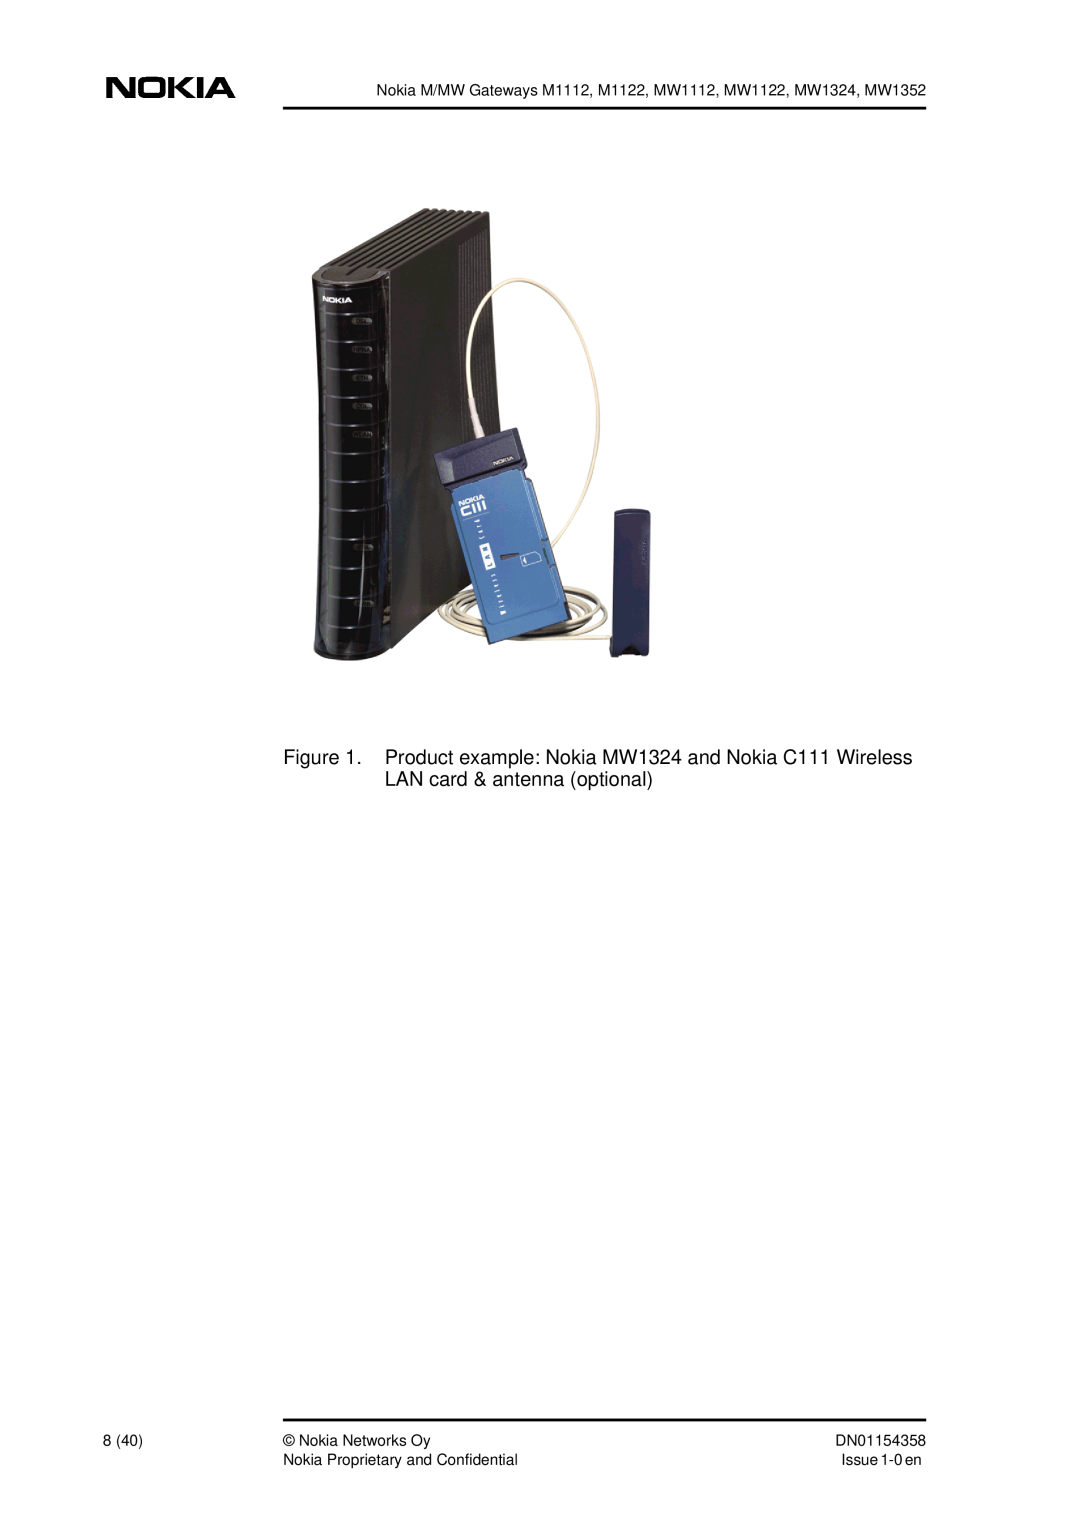 Nokia DSL Gateway High-Speed Internet Connection manual Nokia M/MW Gateways M1112, M1122, MW1112, MW1122, MW1324, MW1352 